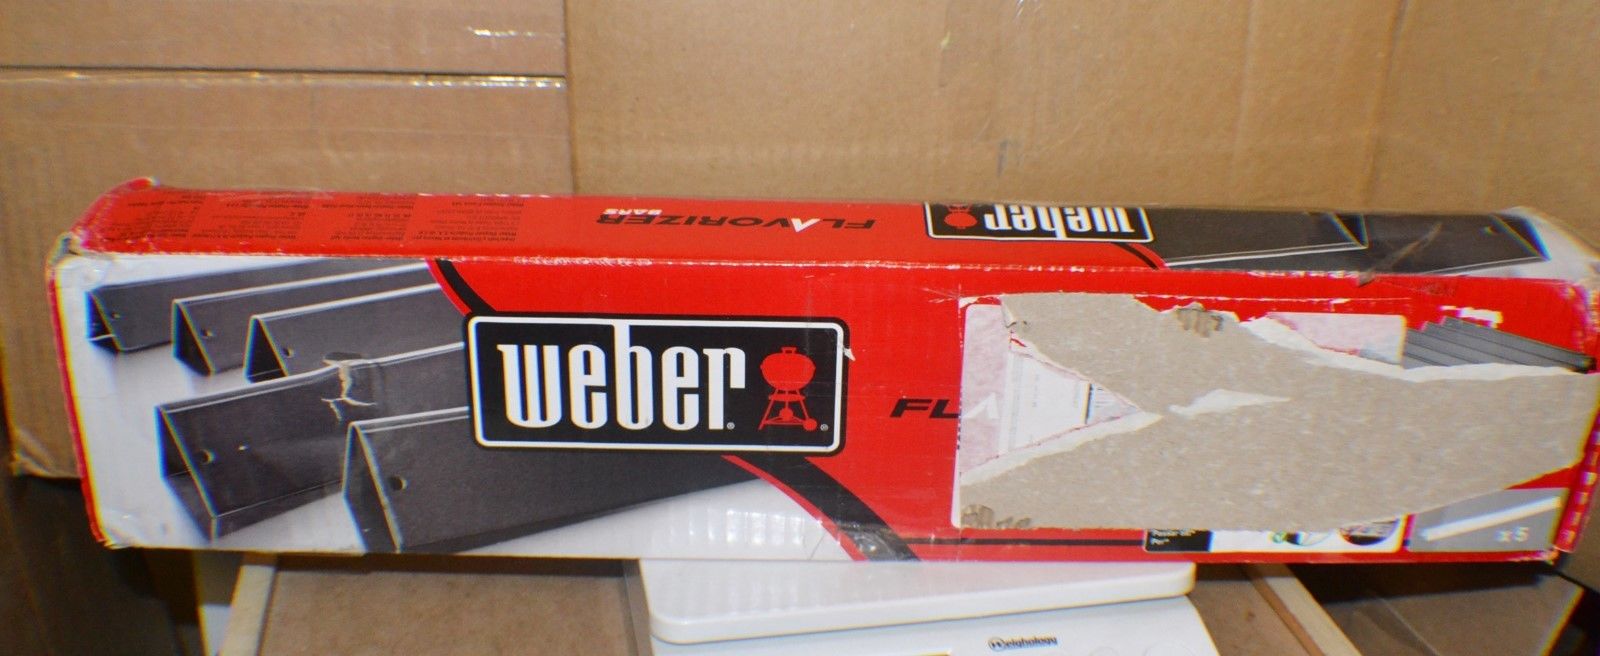 Weber 7536 Gas Grill Porcelain Enameled Flavorizer Bar Set for Weber Gas Grills